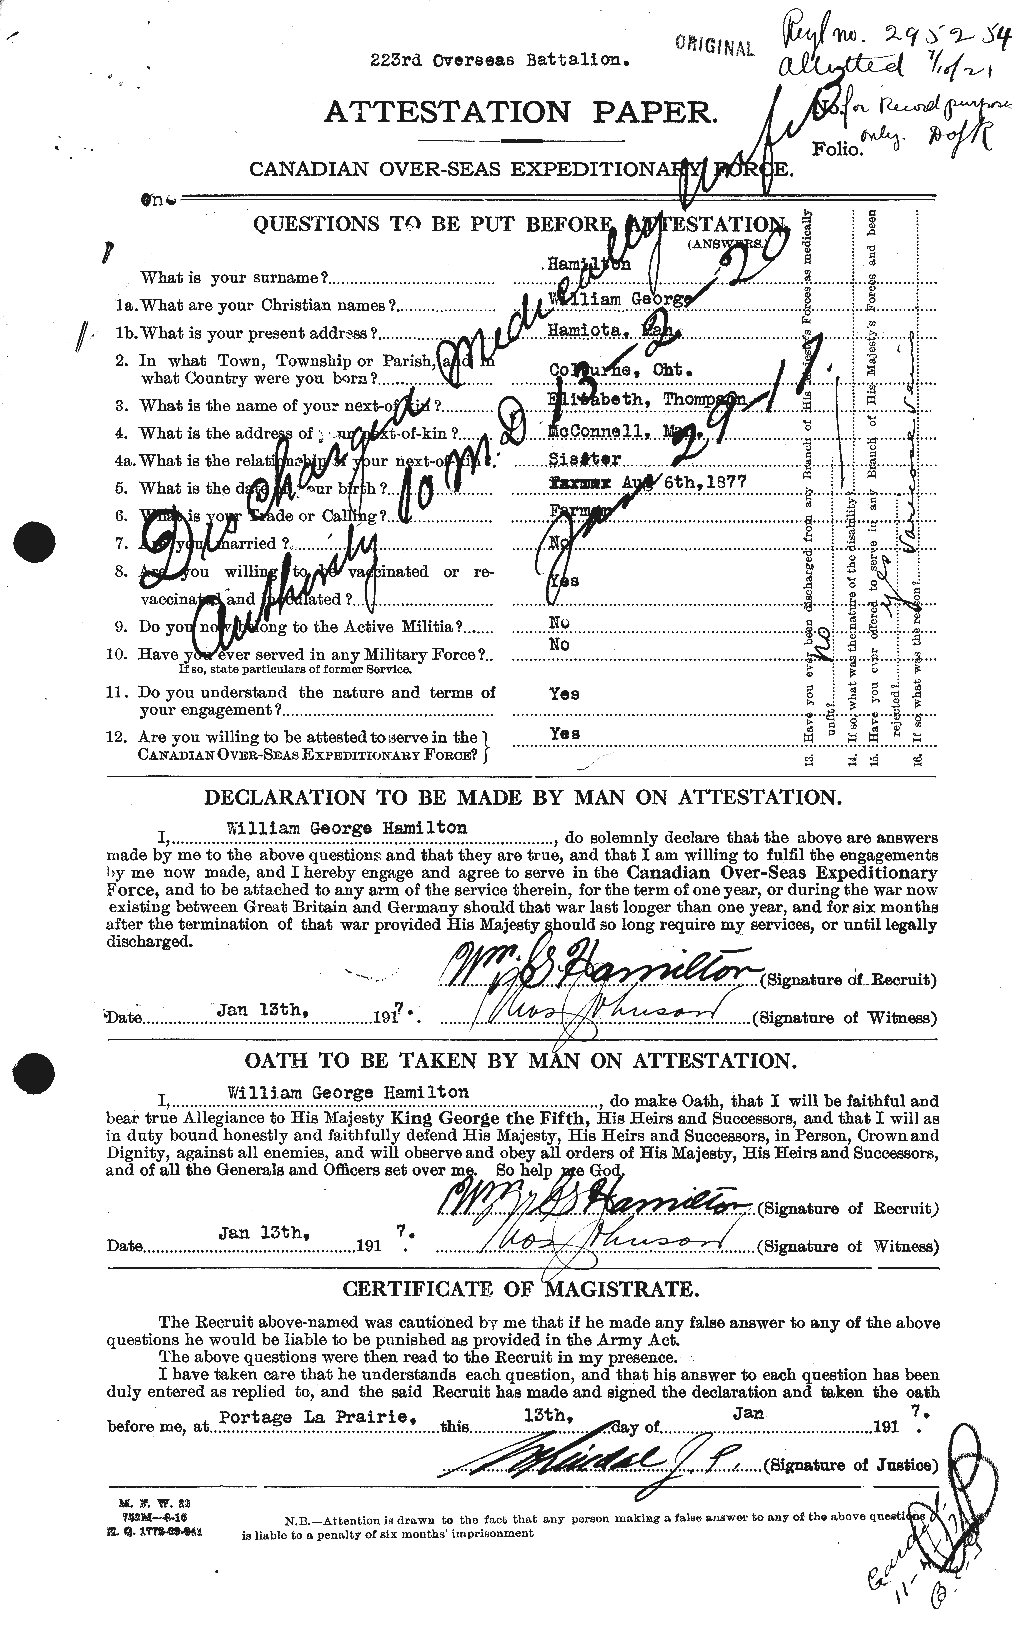 Dossiers du Personnel de la Première Guerre mondiale - CEC 374889a